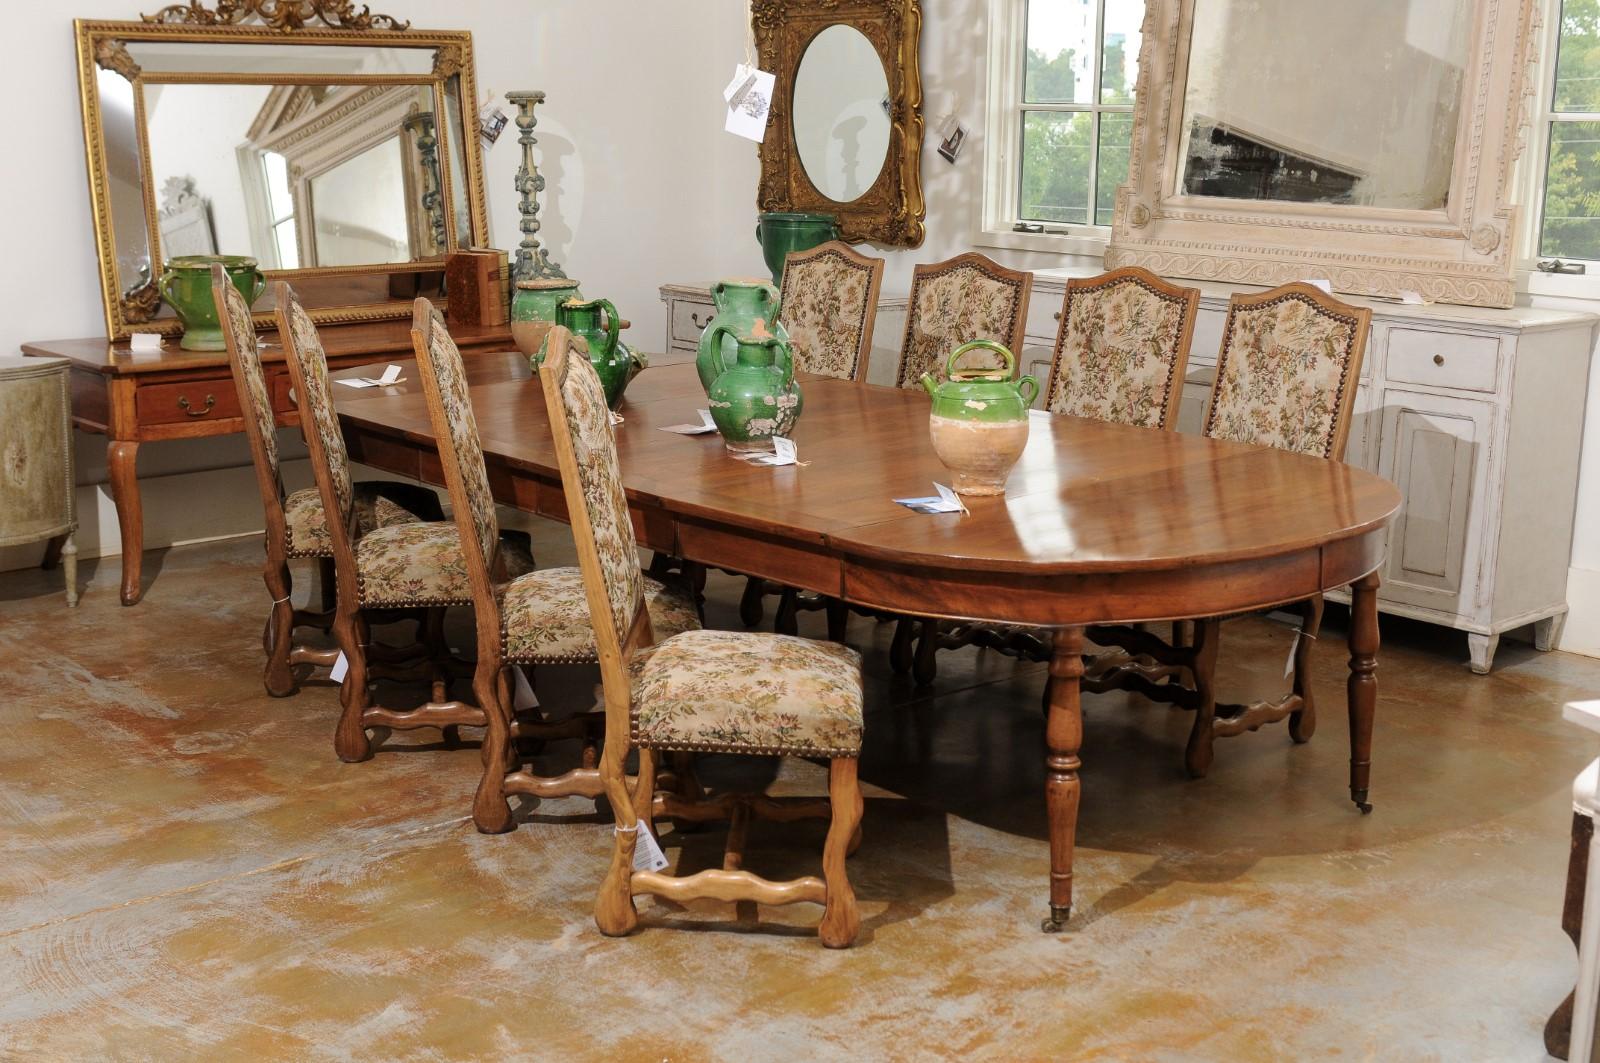 Ensemble de huit chaises de salle à manger en os de mouton de style Louis XIII du 19ème siècle avec tapisserie et garniture de clous. Né en France au XIXe siècle, cet ensemble de chaises de salle à manger présente les caractéristiques stylistiques